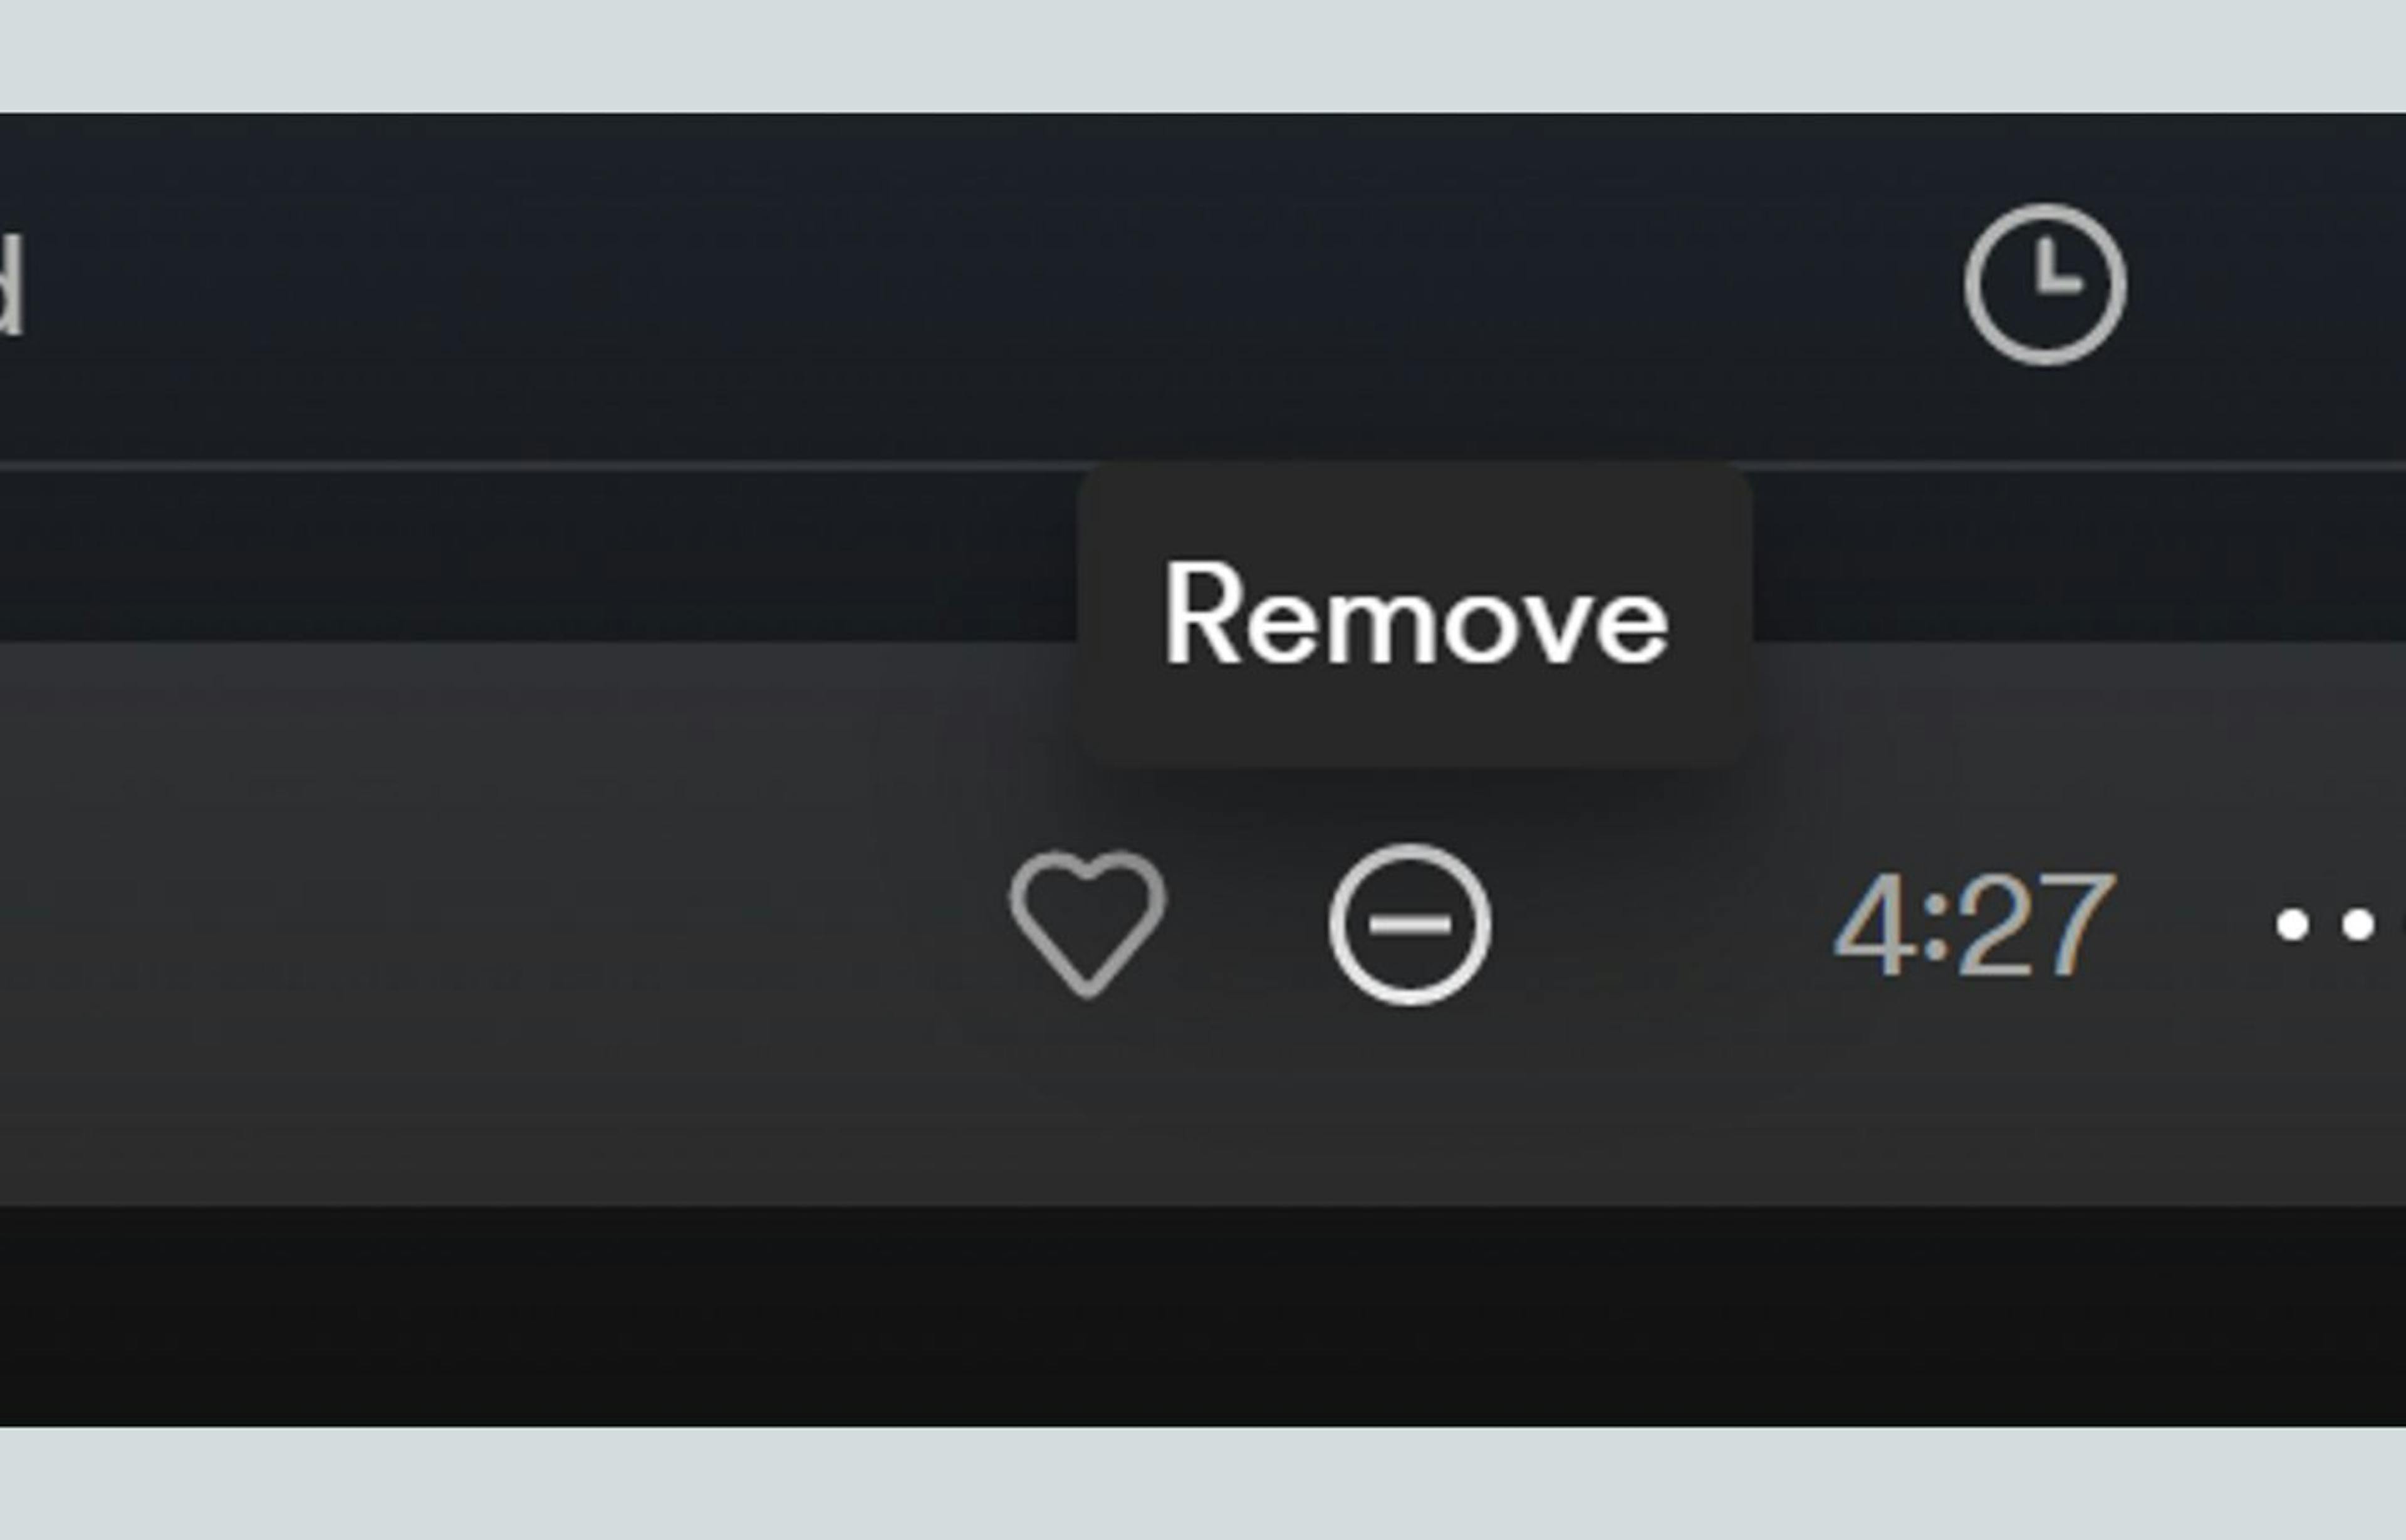 Nút xóa của Spotify cho phép người dùng làm rõ gợi ý, thông báo cho hệ thống muốn bớt xem các bài hát tương tự